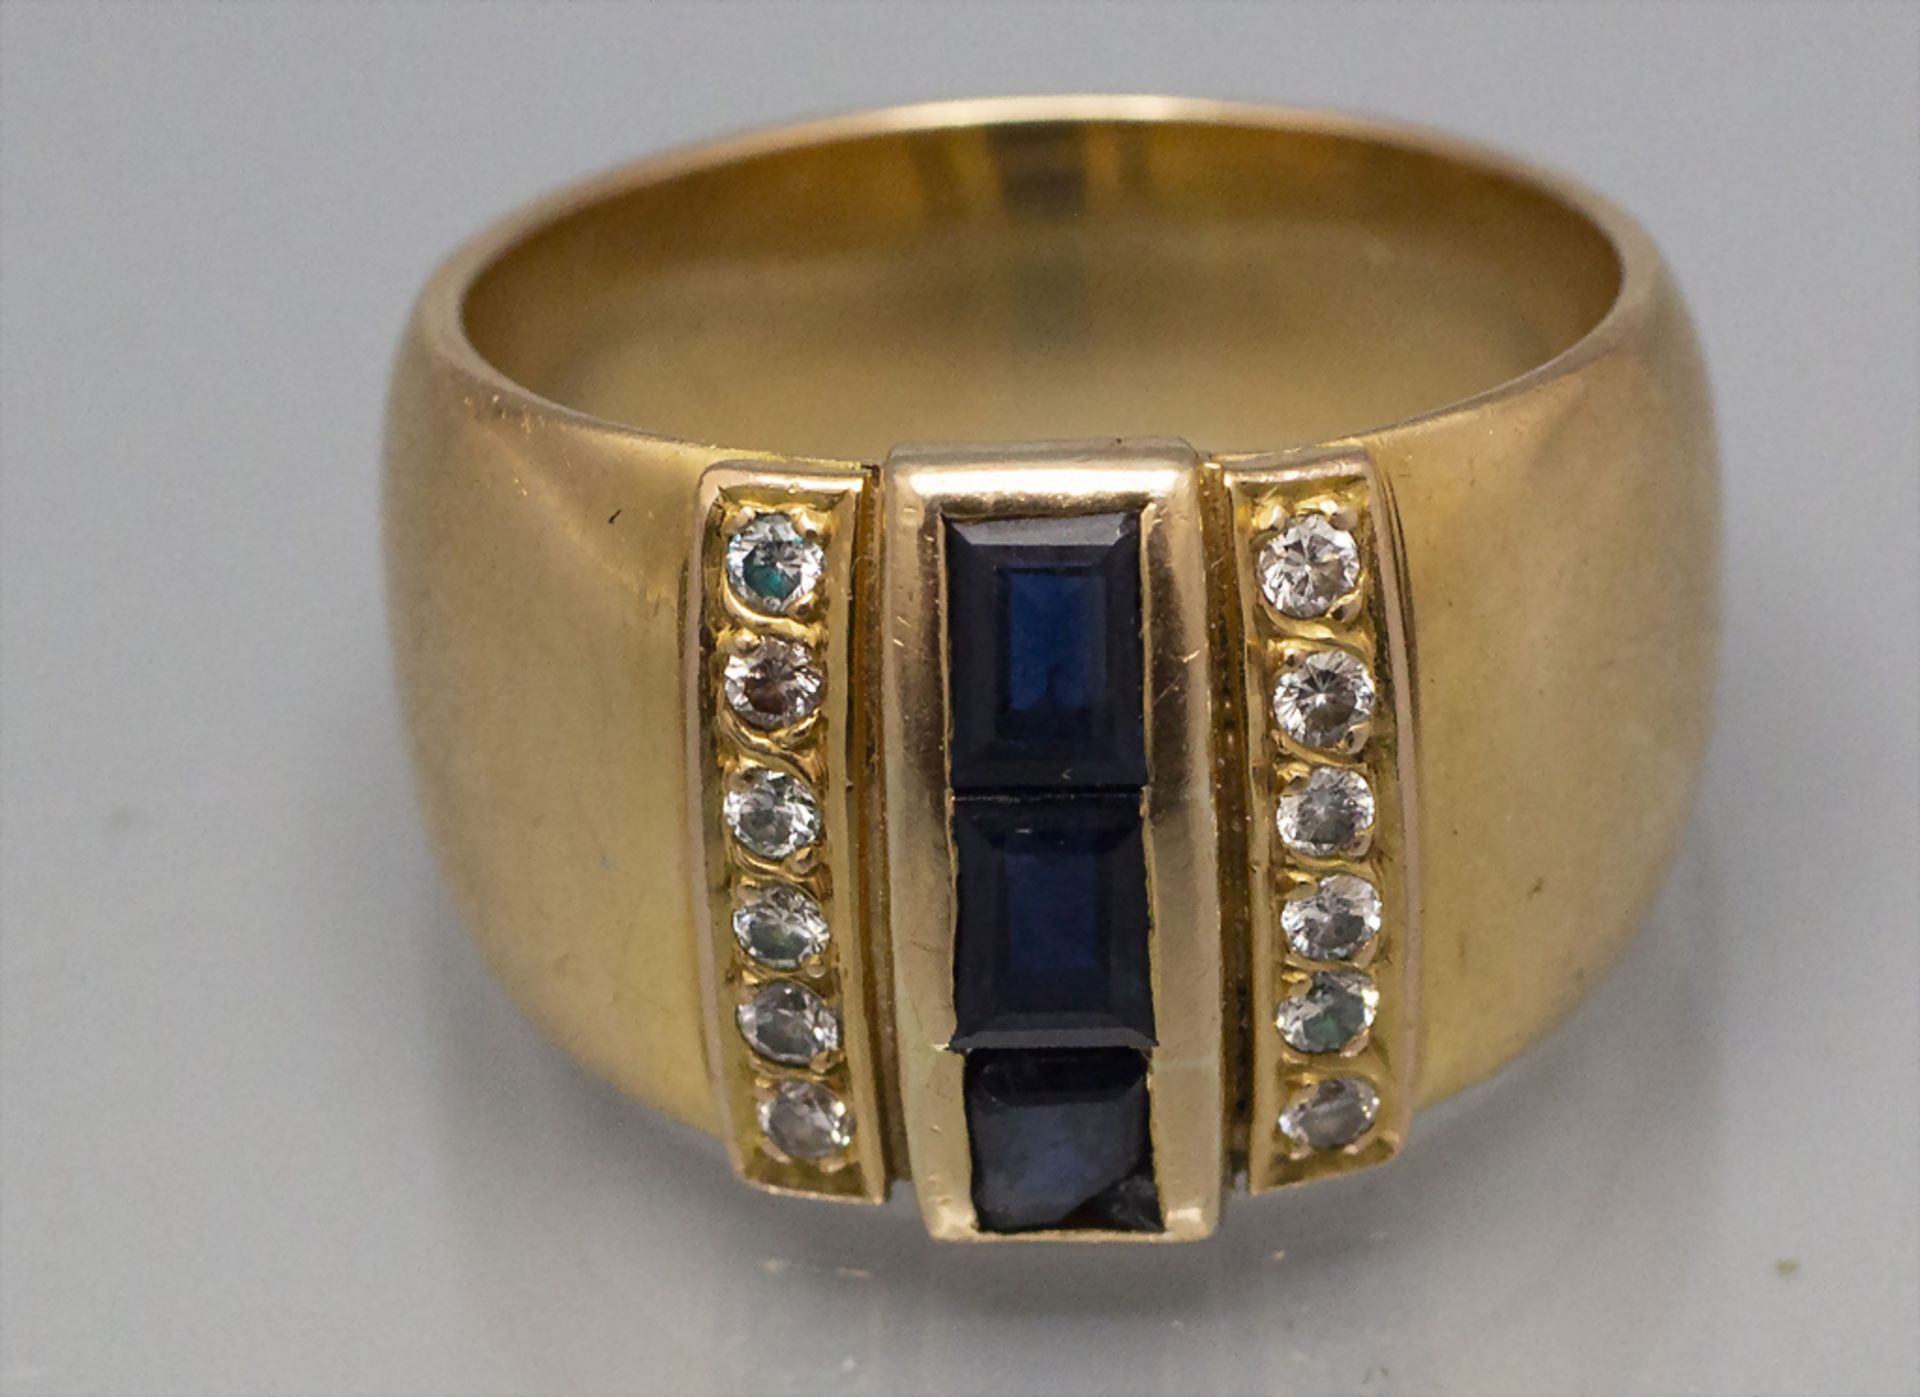 Damenring mit Saphiren und Brillanten / A ladies 18 ct gold ring with diamonds and sapphires